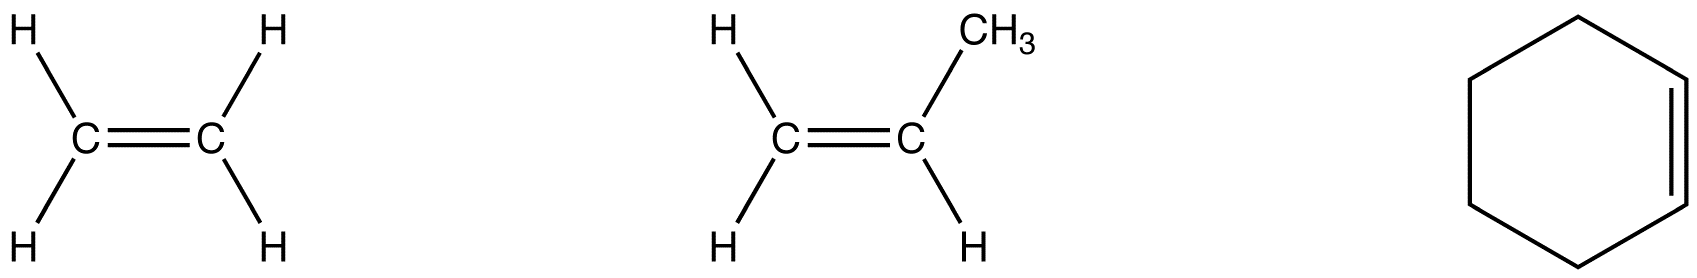 alkene2.png